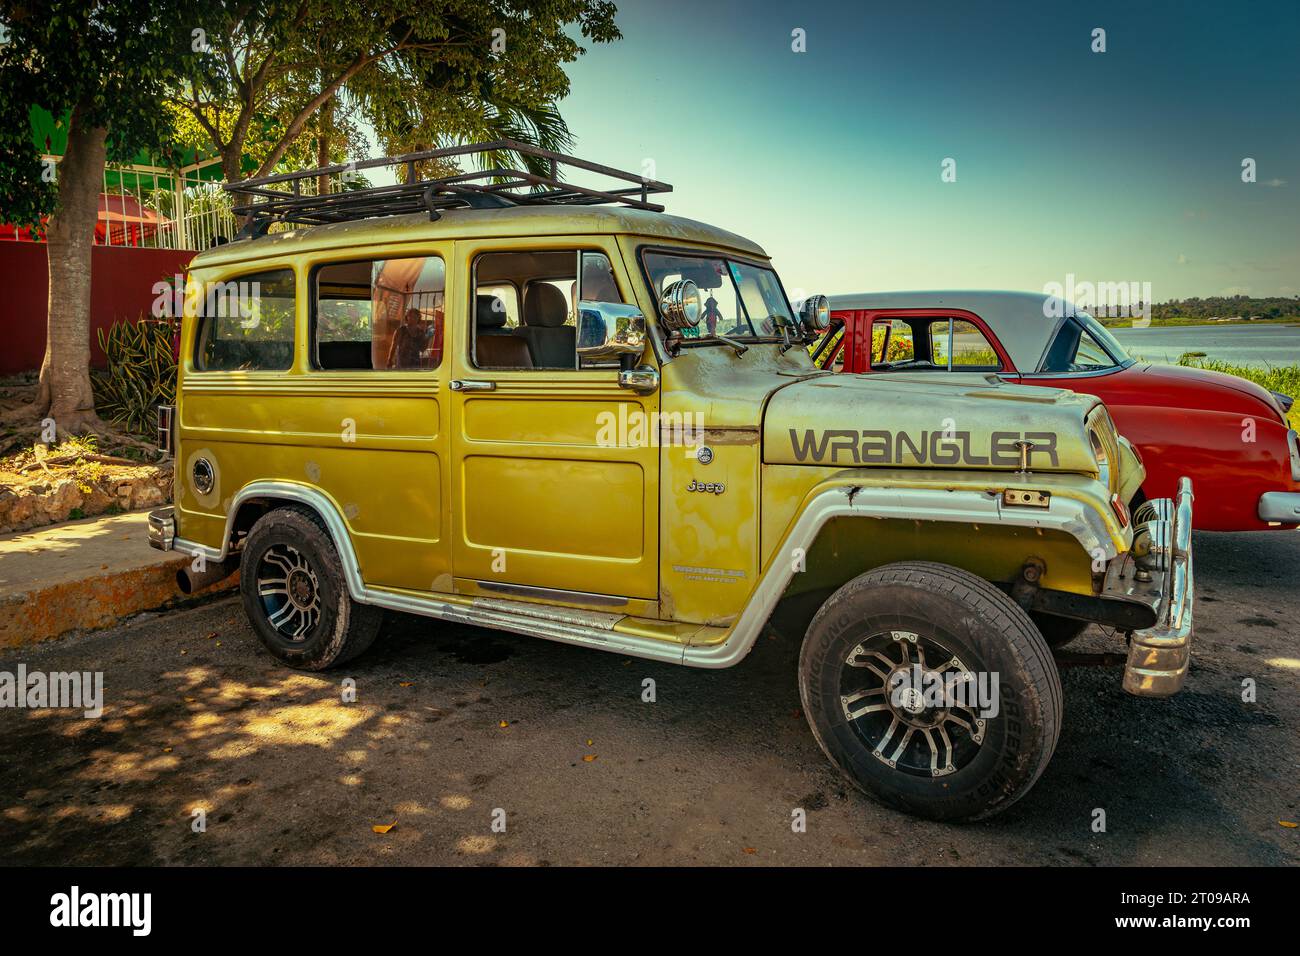 Giron, Cuba - Old vintage Jeep Wrangler wagon Stock Photo